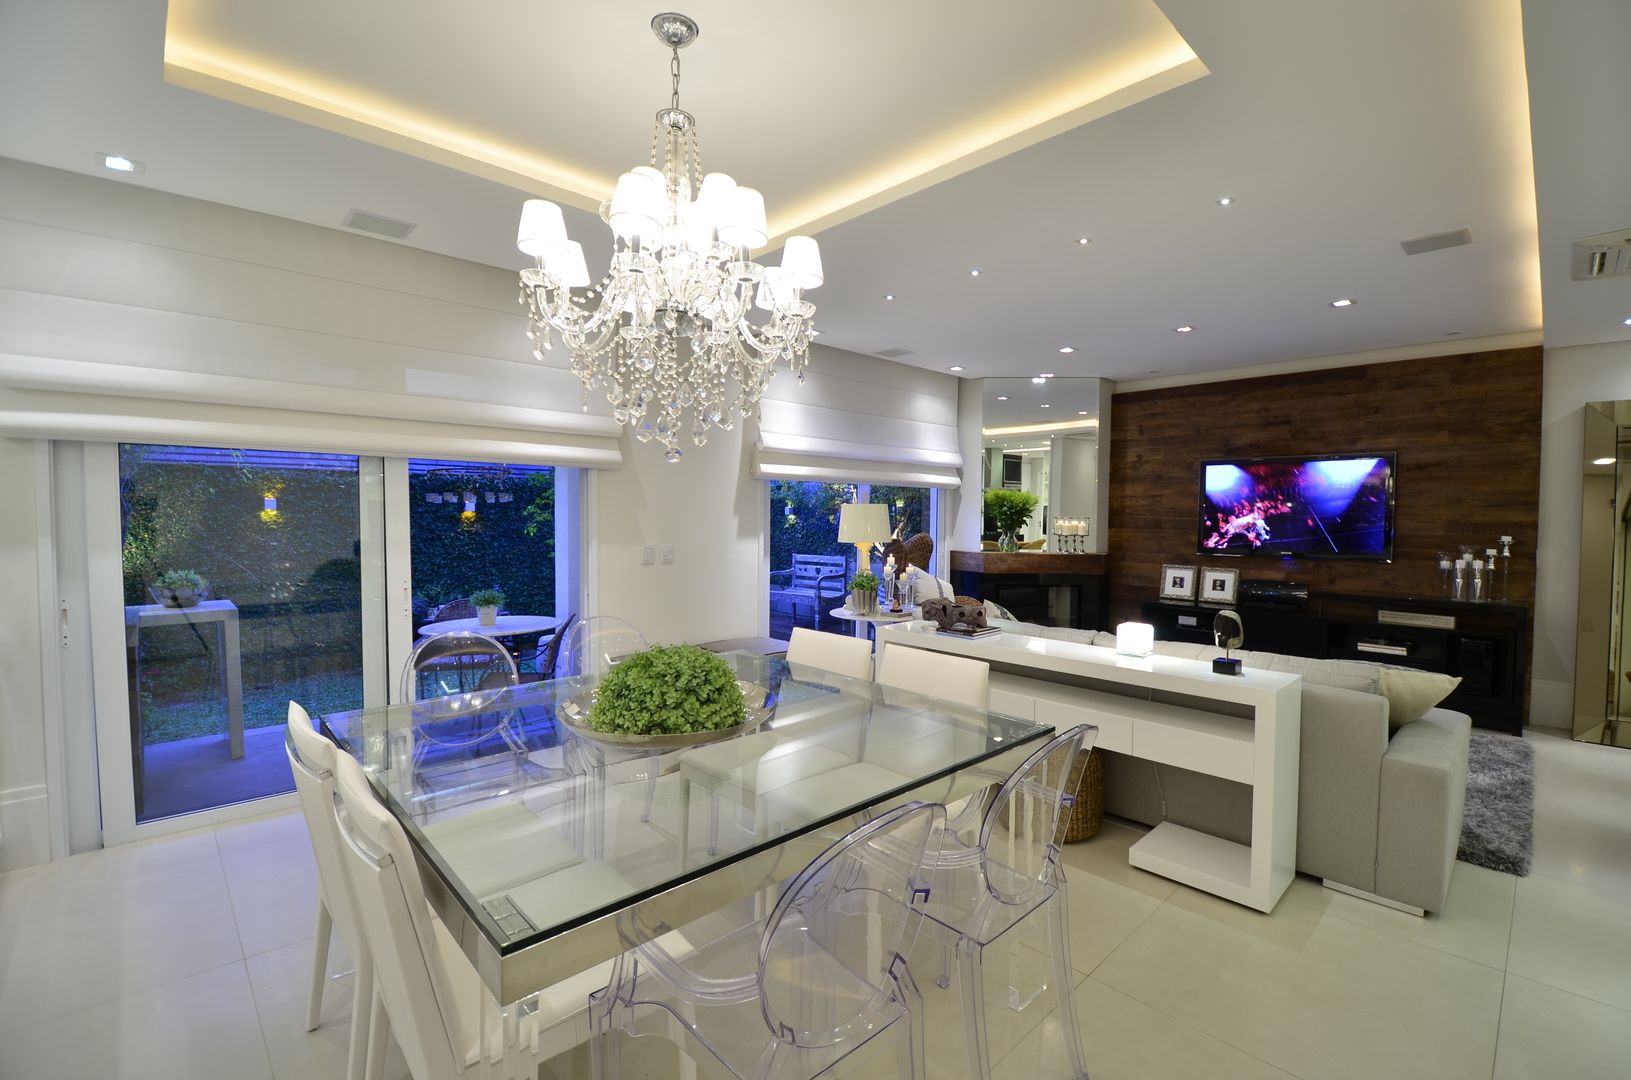 Elegante casa em condomínio, Tania Bertolucci de Souza | Arquitetos Associados Tania Bertolucci de Souza | Arquitetos Associados Modern dining room